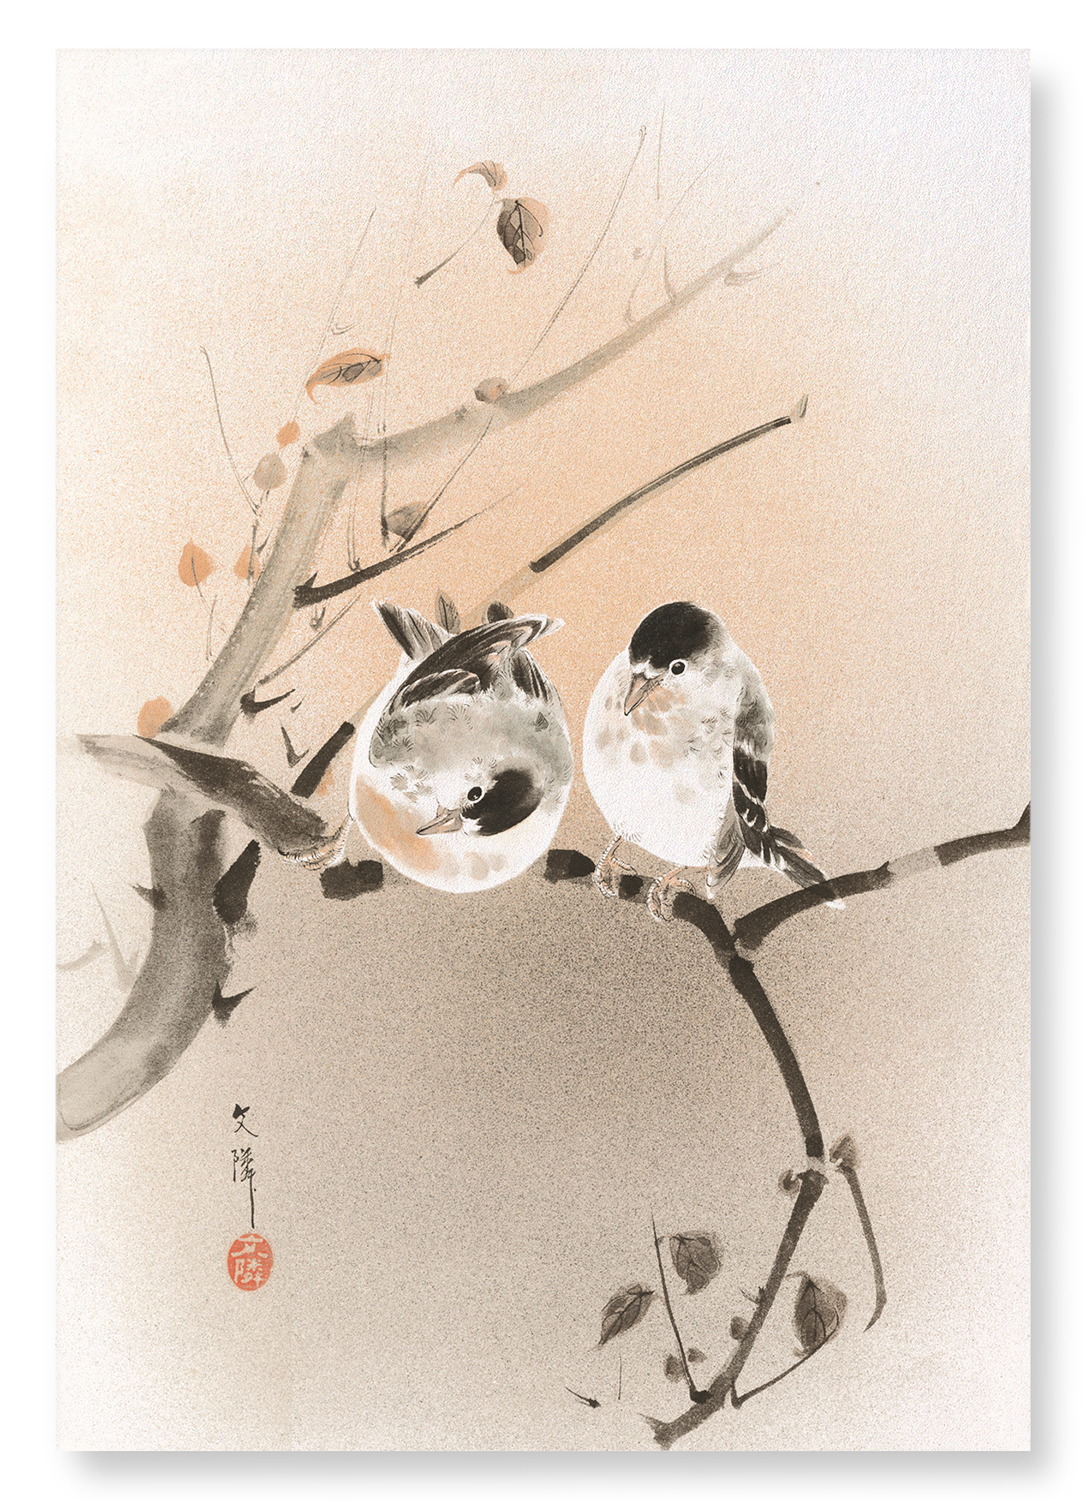 COUPLE OF BIRDS (C.1890)